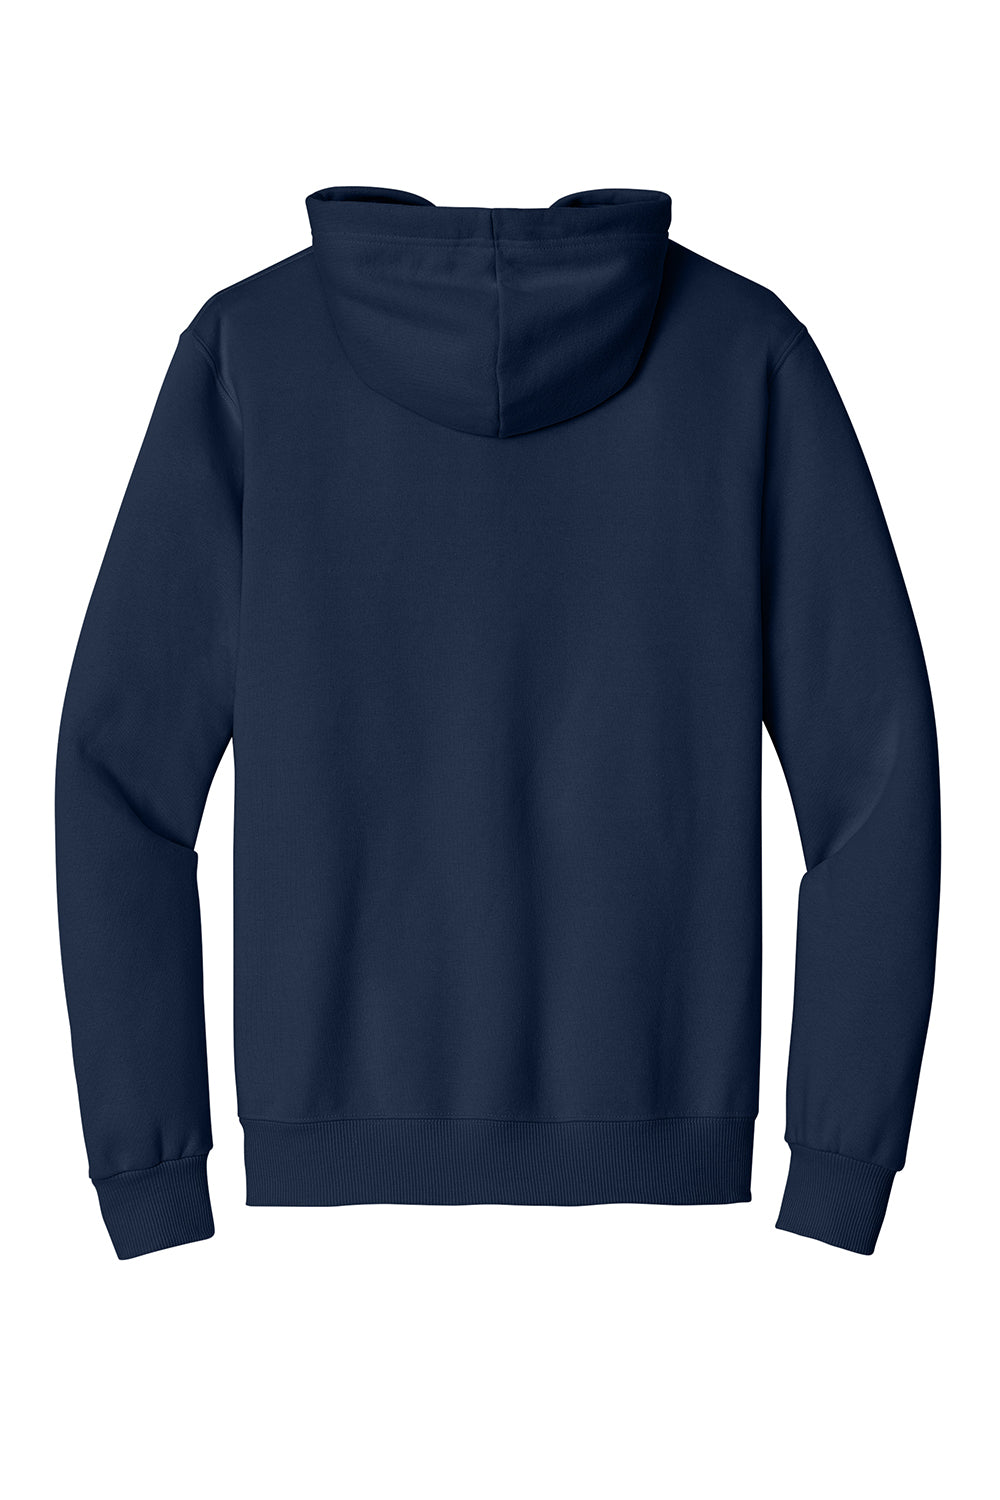 Jerzees 700M Mens Eco Premium Hooded Sweatshirt Hoodie Navy Blue Flat Back